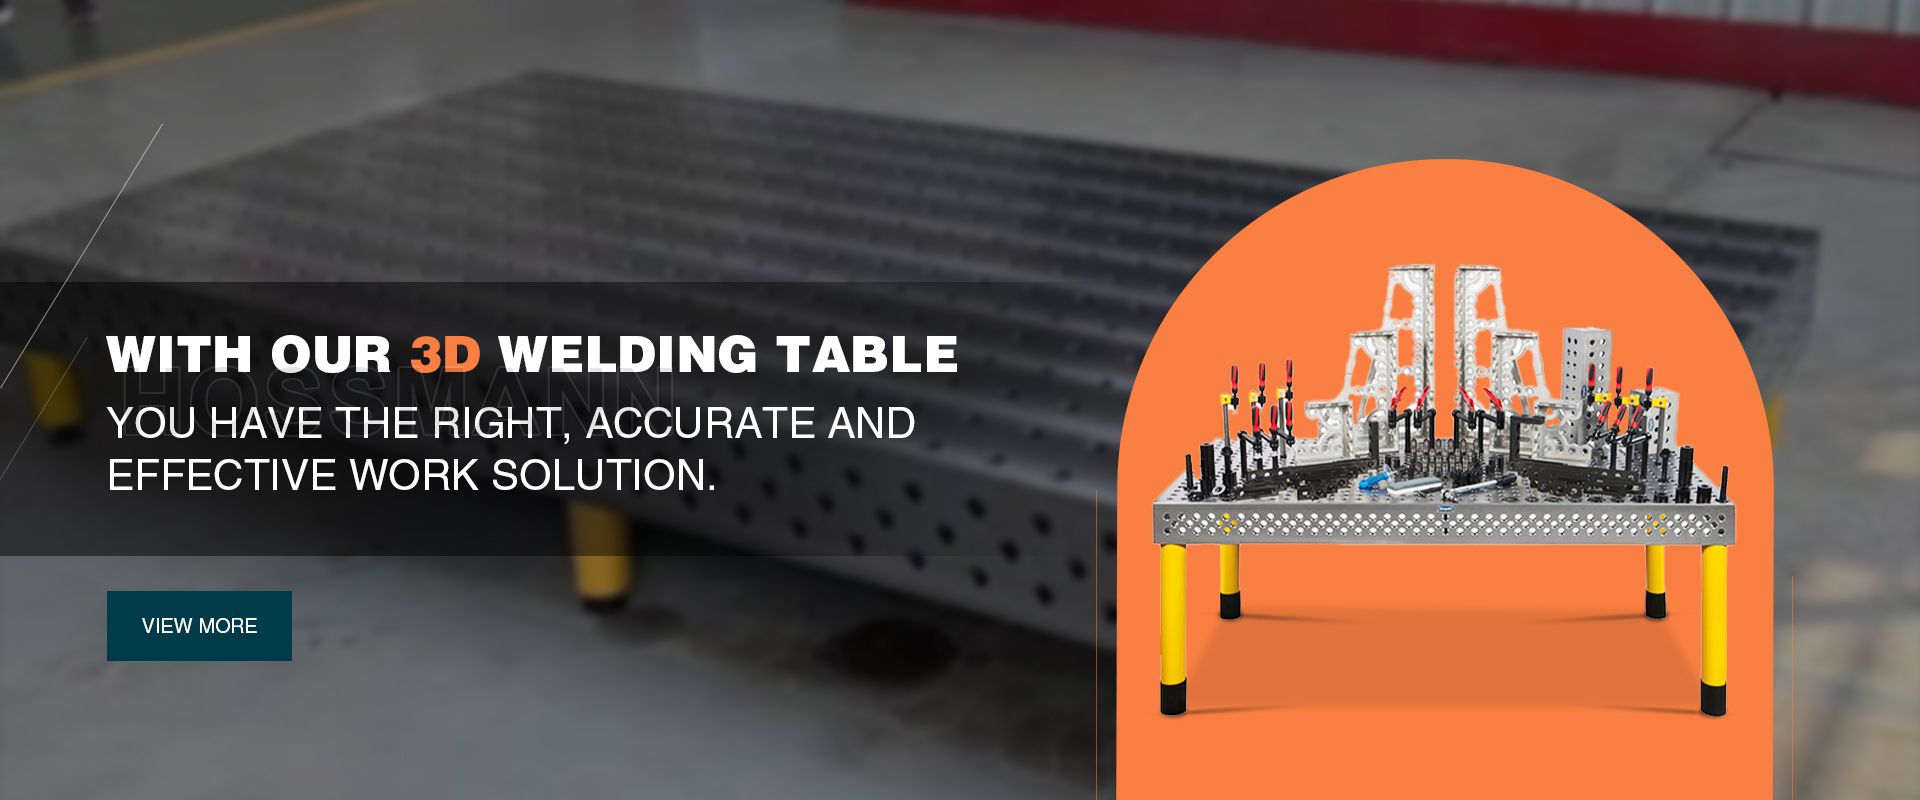 Industrial 3D Welding Table